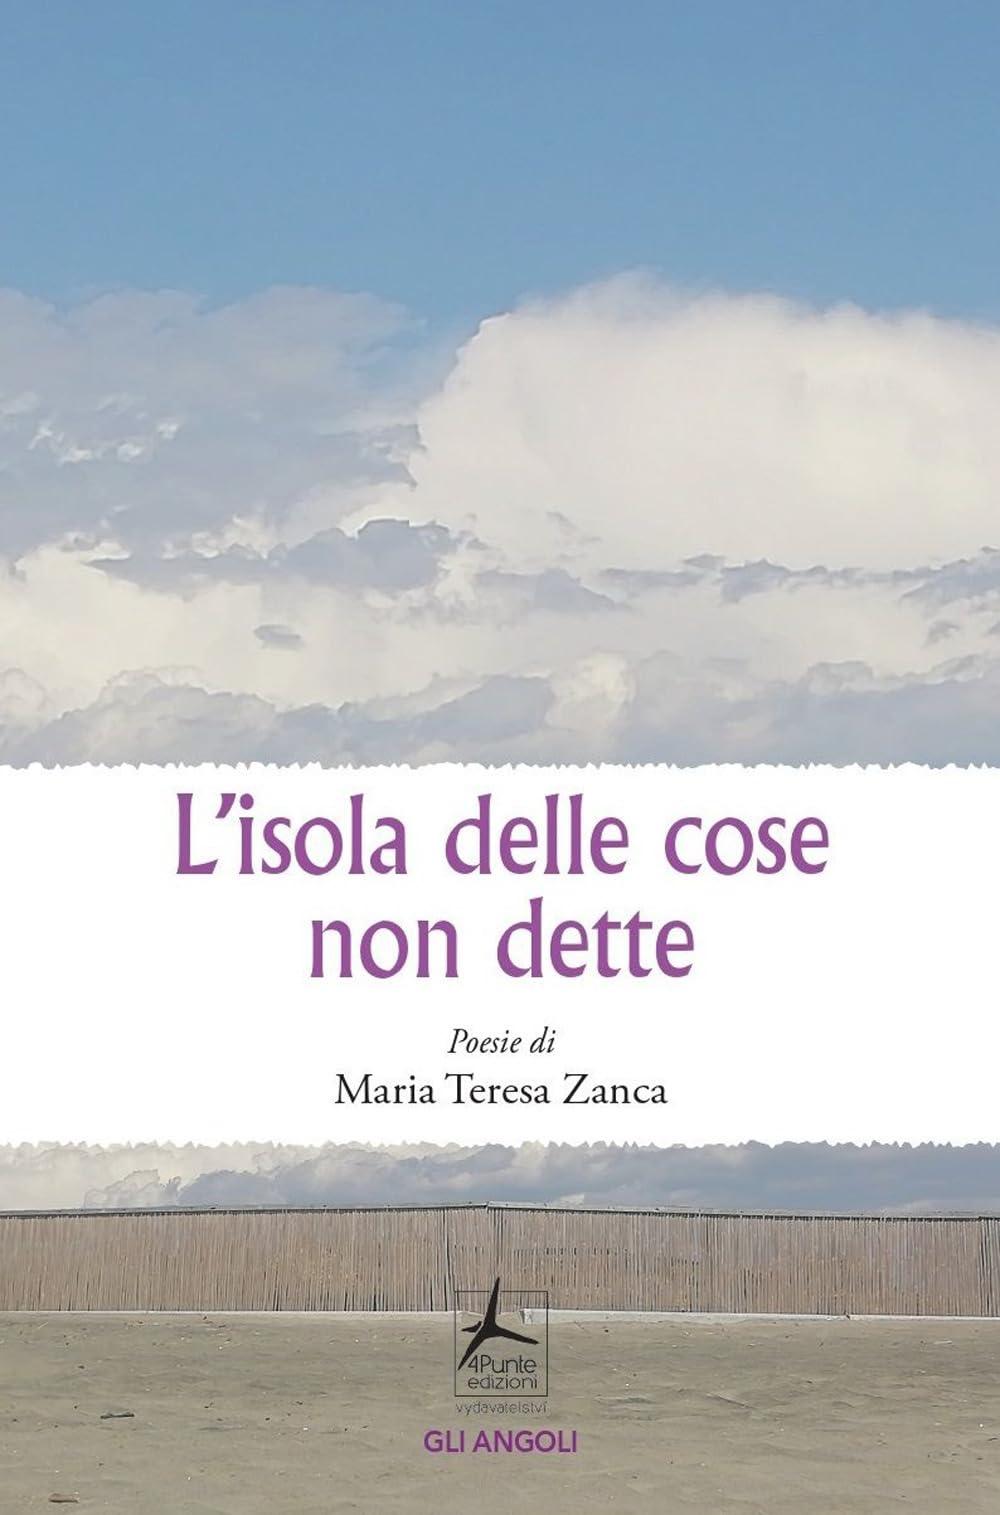 Libro "L'isola delle cose non dette" di Maria-Teresa Zanca